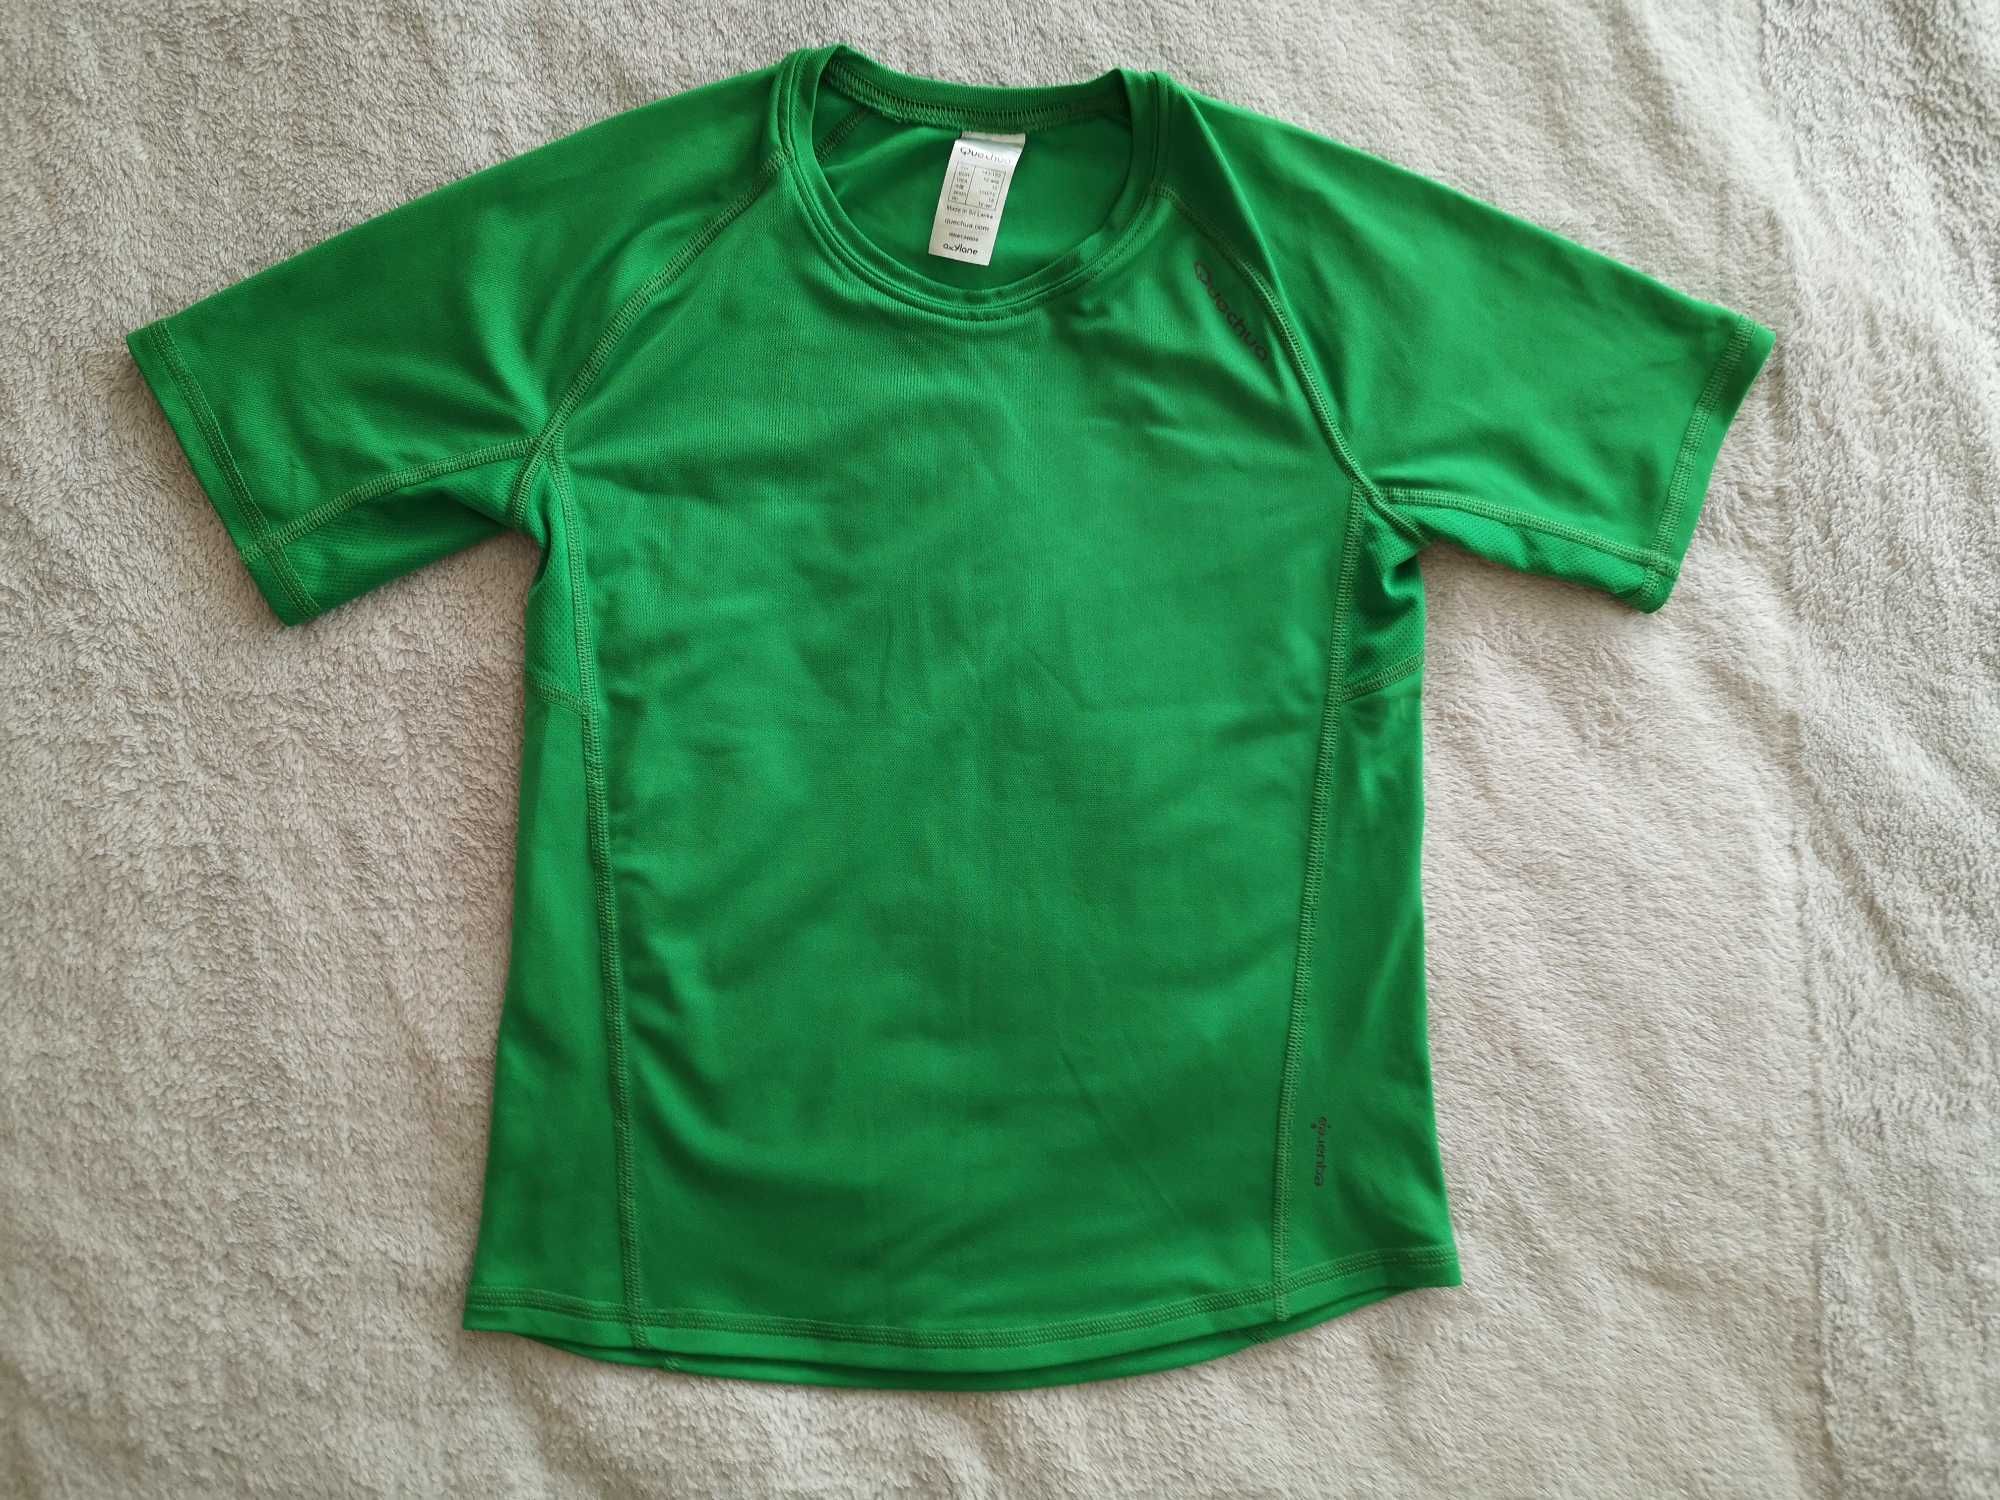 Zielona bluzka koszulka sportowa Quechua 143 146 - 152 jak nowa